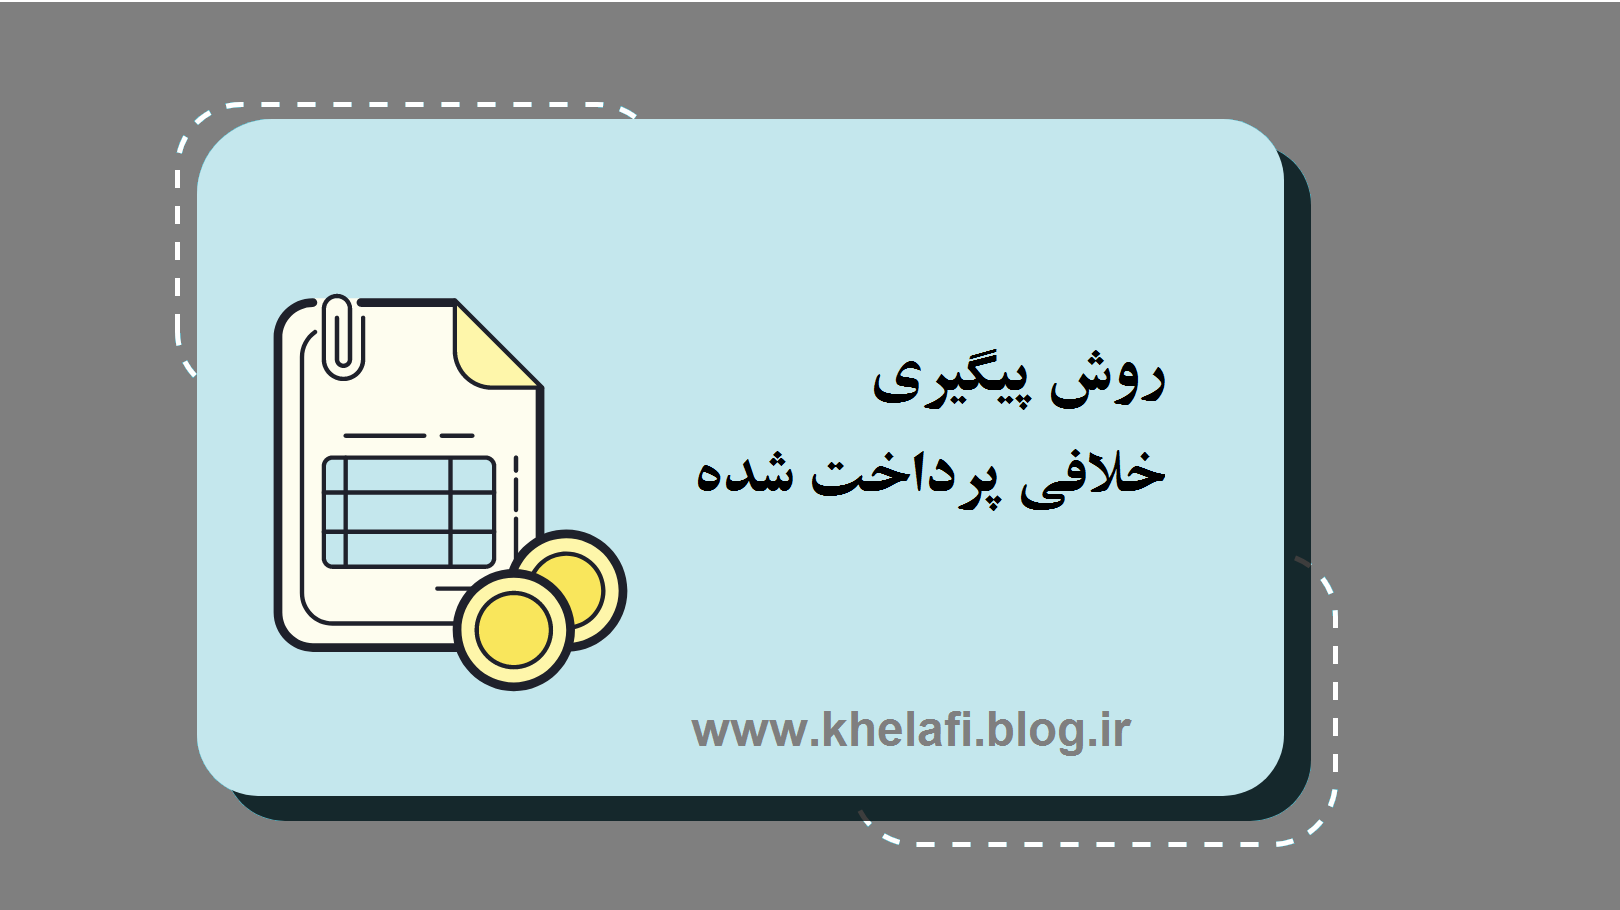 پیگیری خلافی پرداخت شده - khelafi.blog.ir